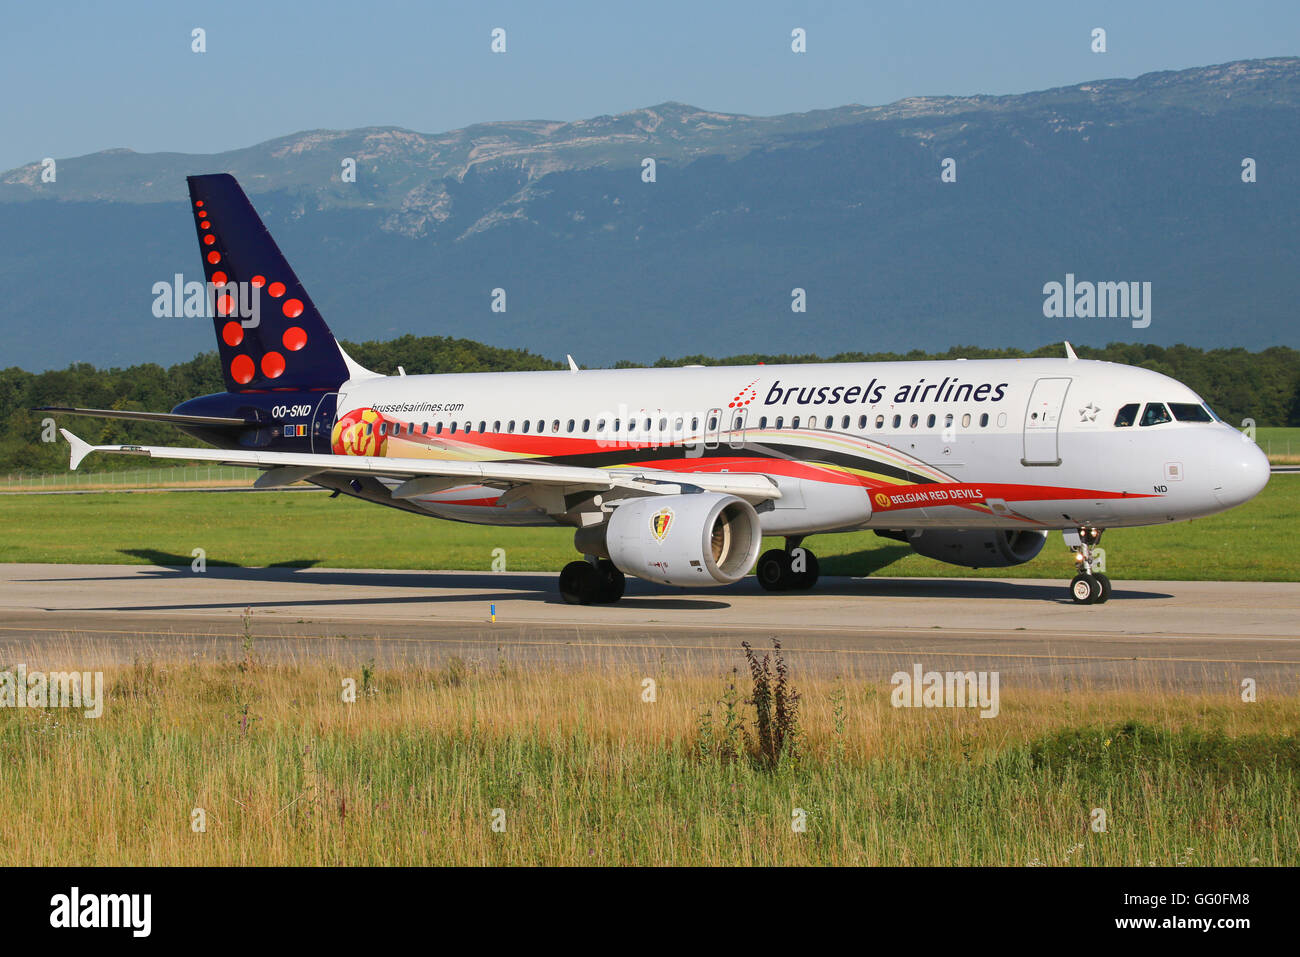 Genf/Schweiz 23. August 2015: A320 von Brussel Airways mit "Belgischen Red Devils" Farben am Flughafen Genf. Stockfoto